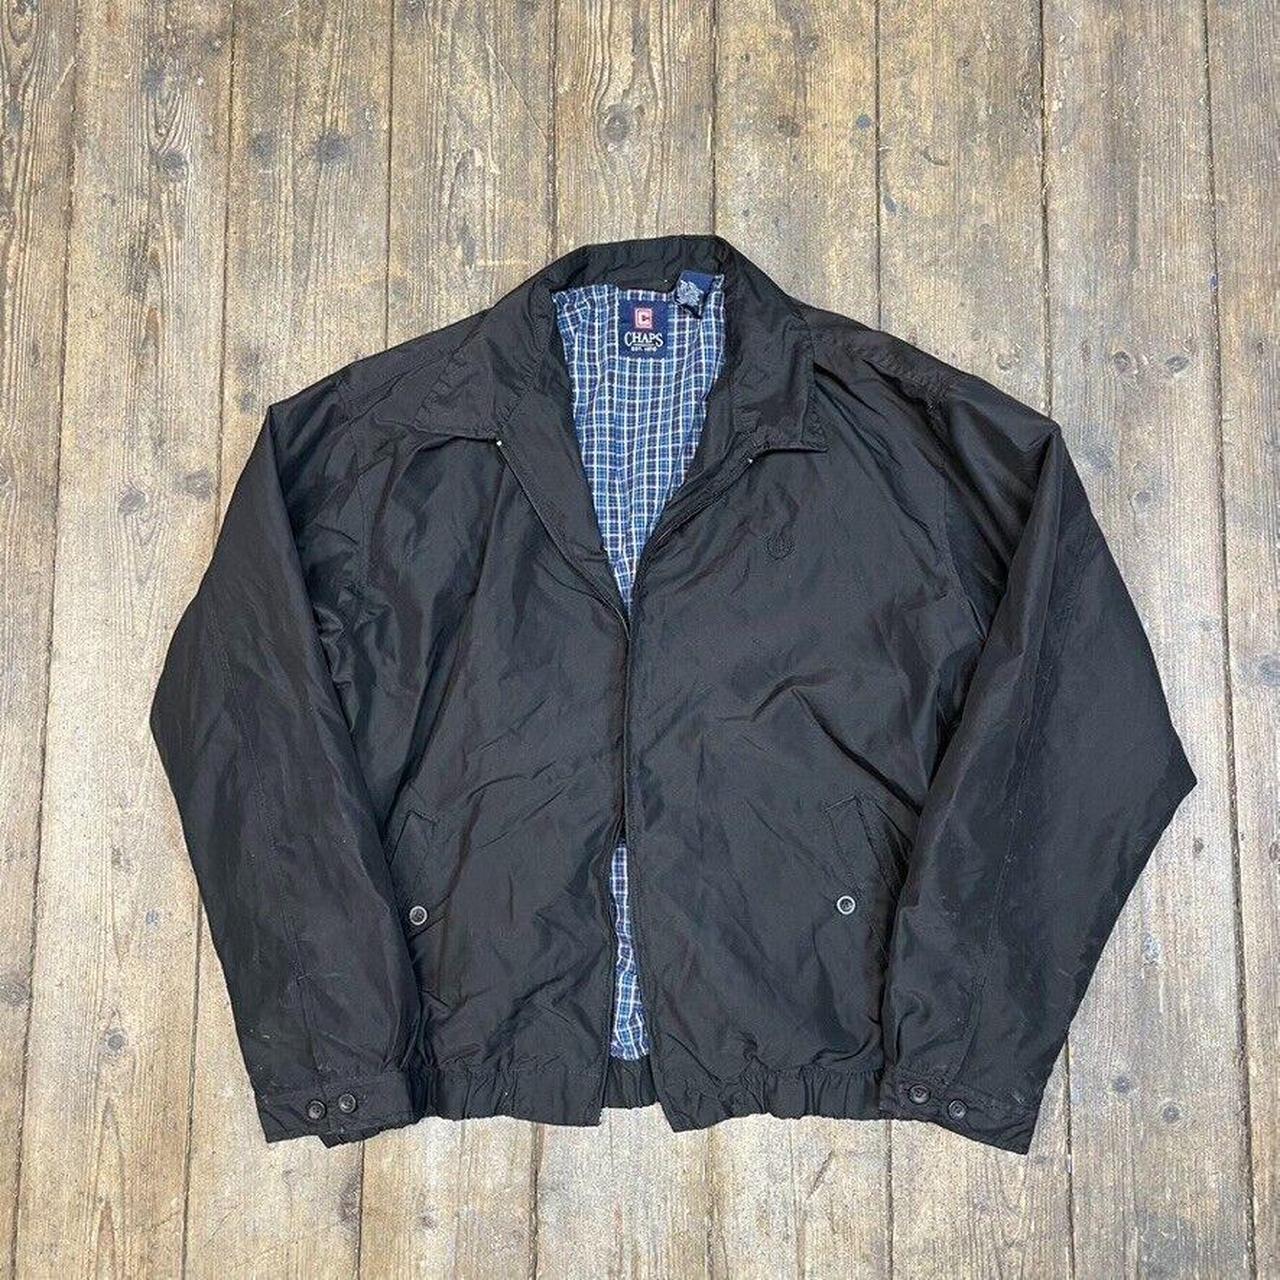 Vintage Chaps Ralph Lauren Leather Varsity Jacket Men’s Large Black